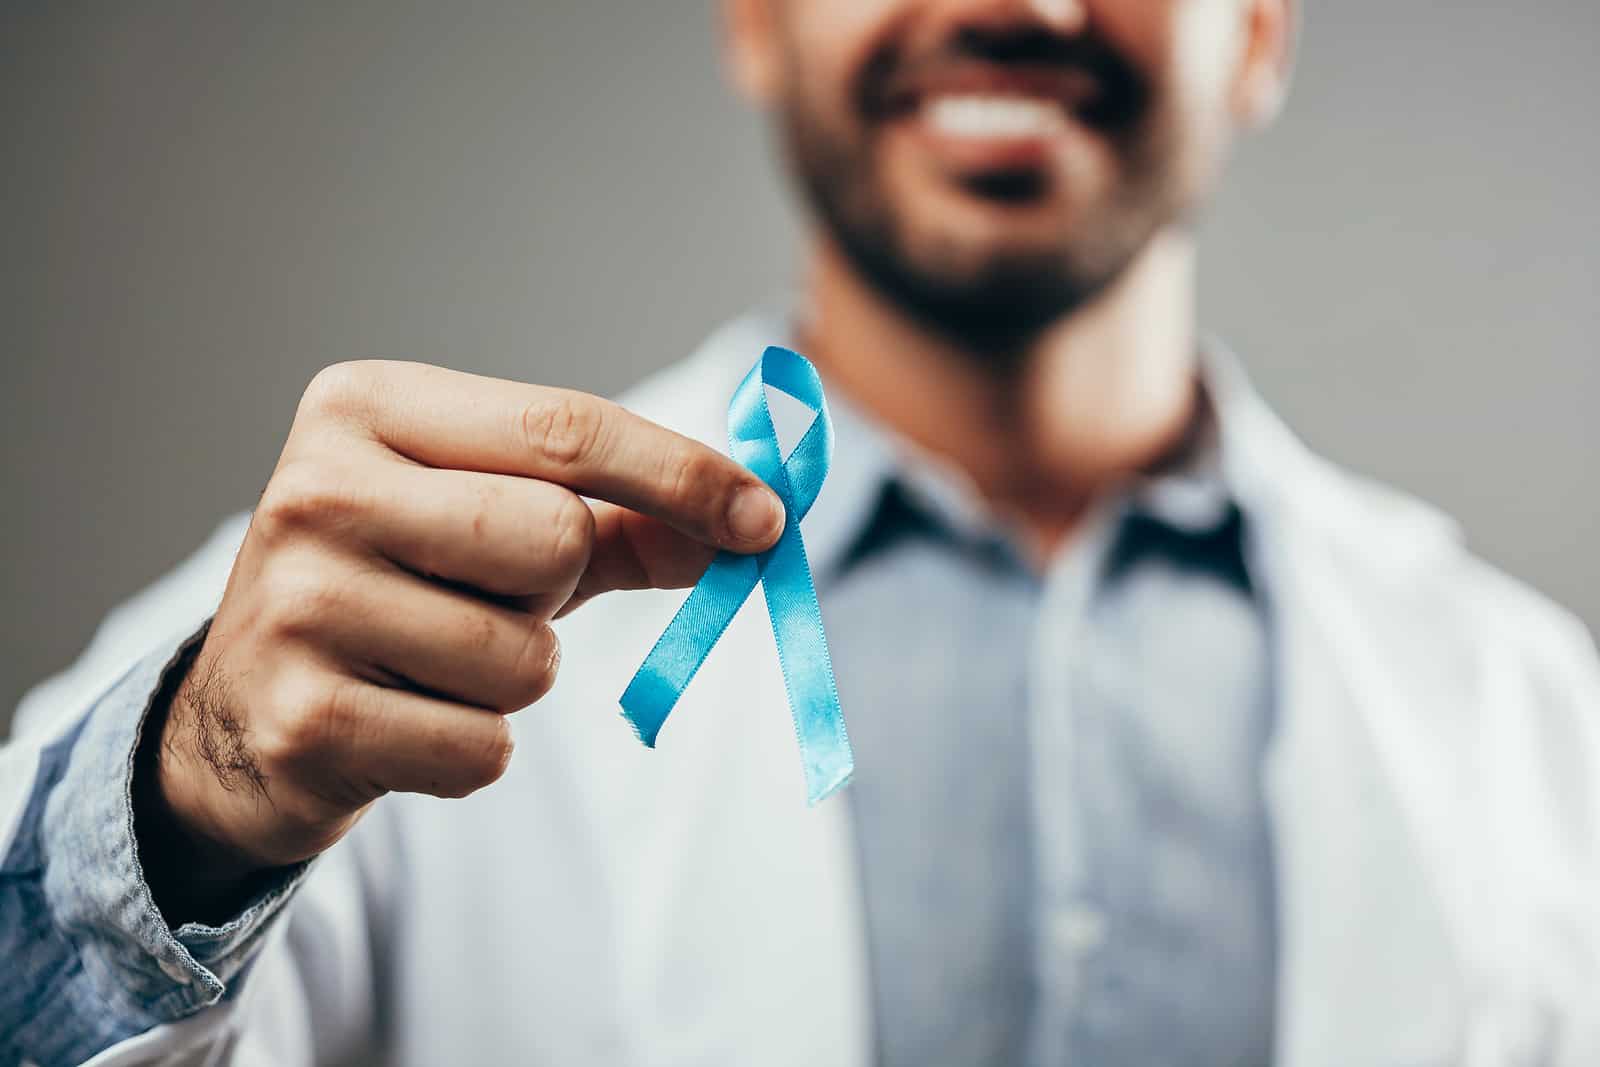 Câncer de próstata mata um homem a cada 38 minutos no Brasil